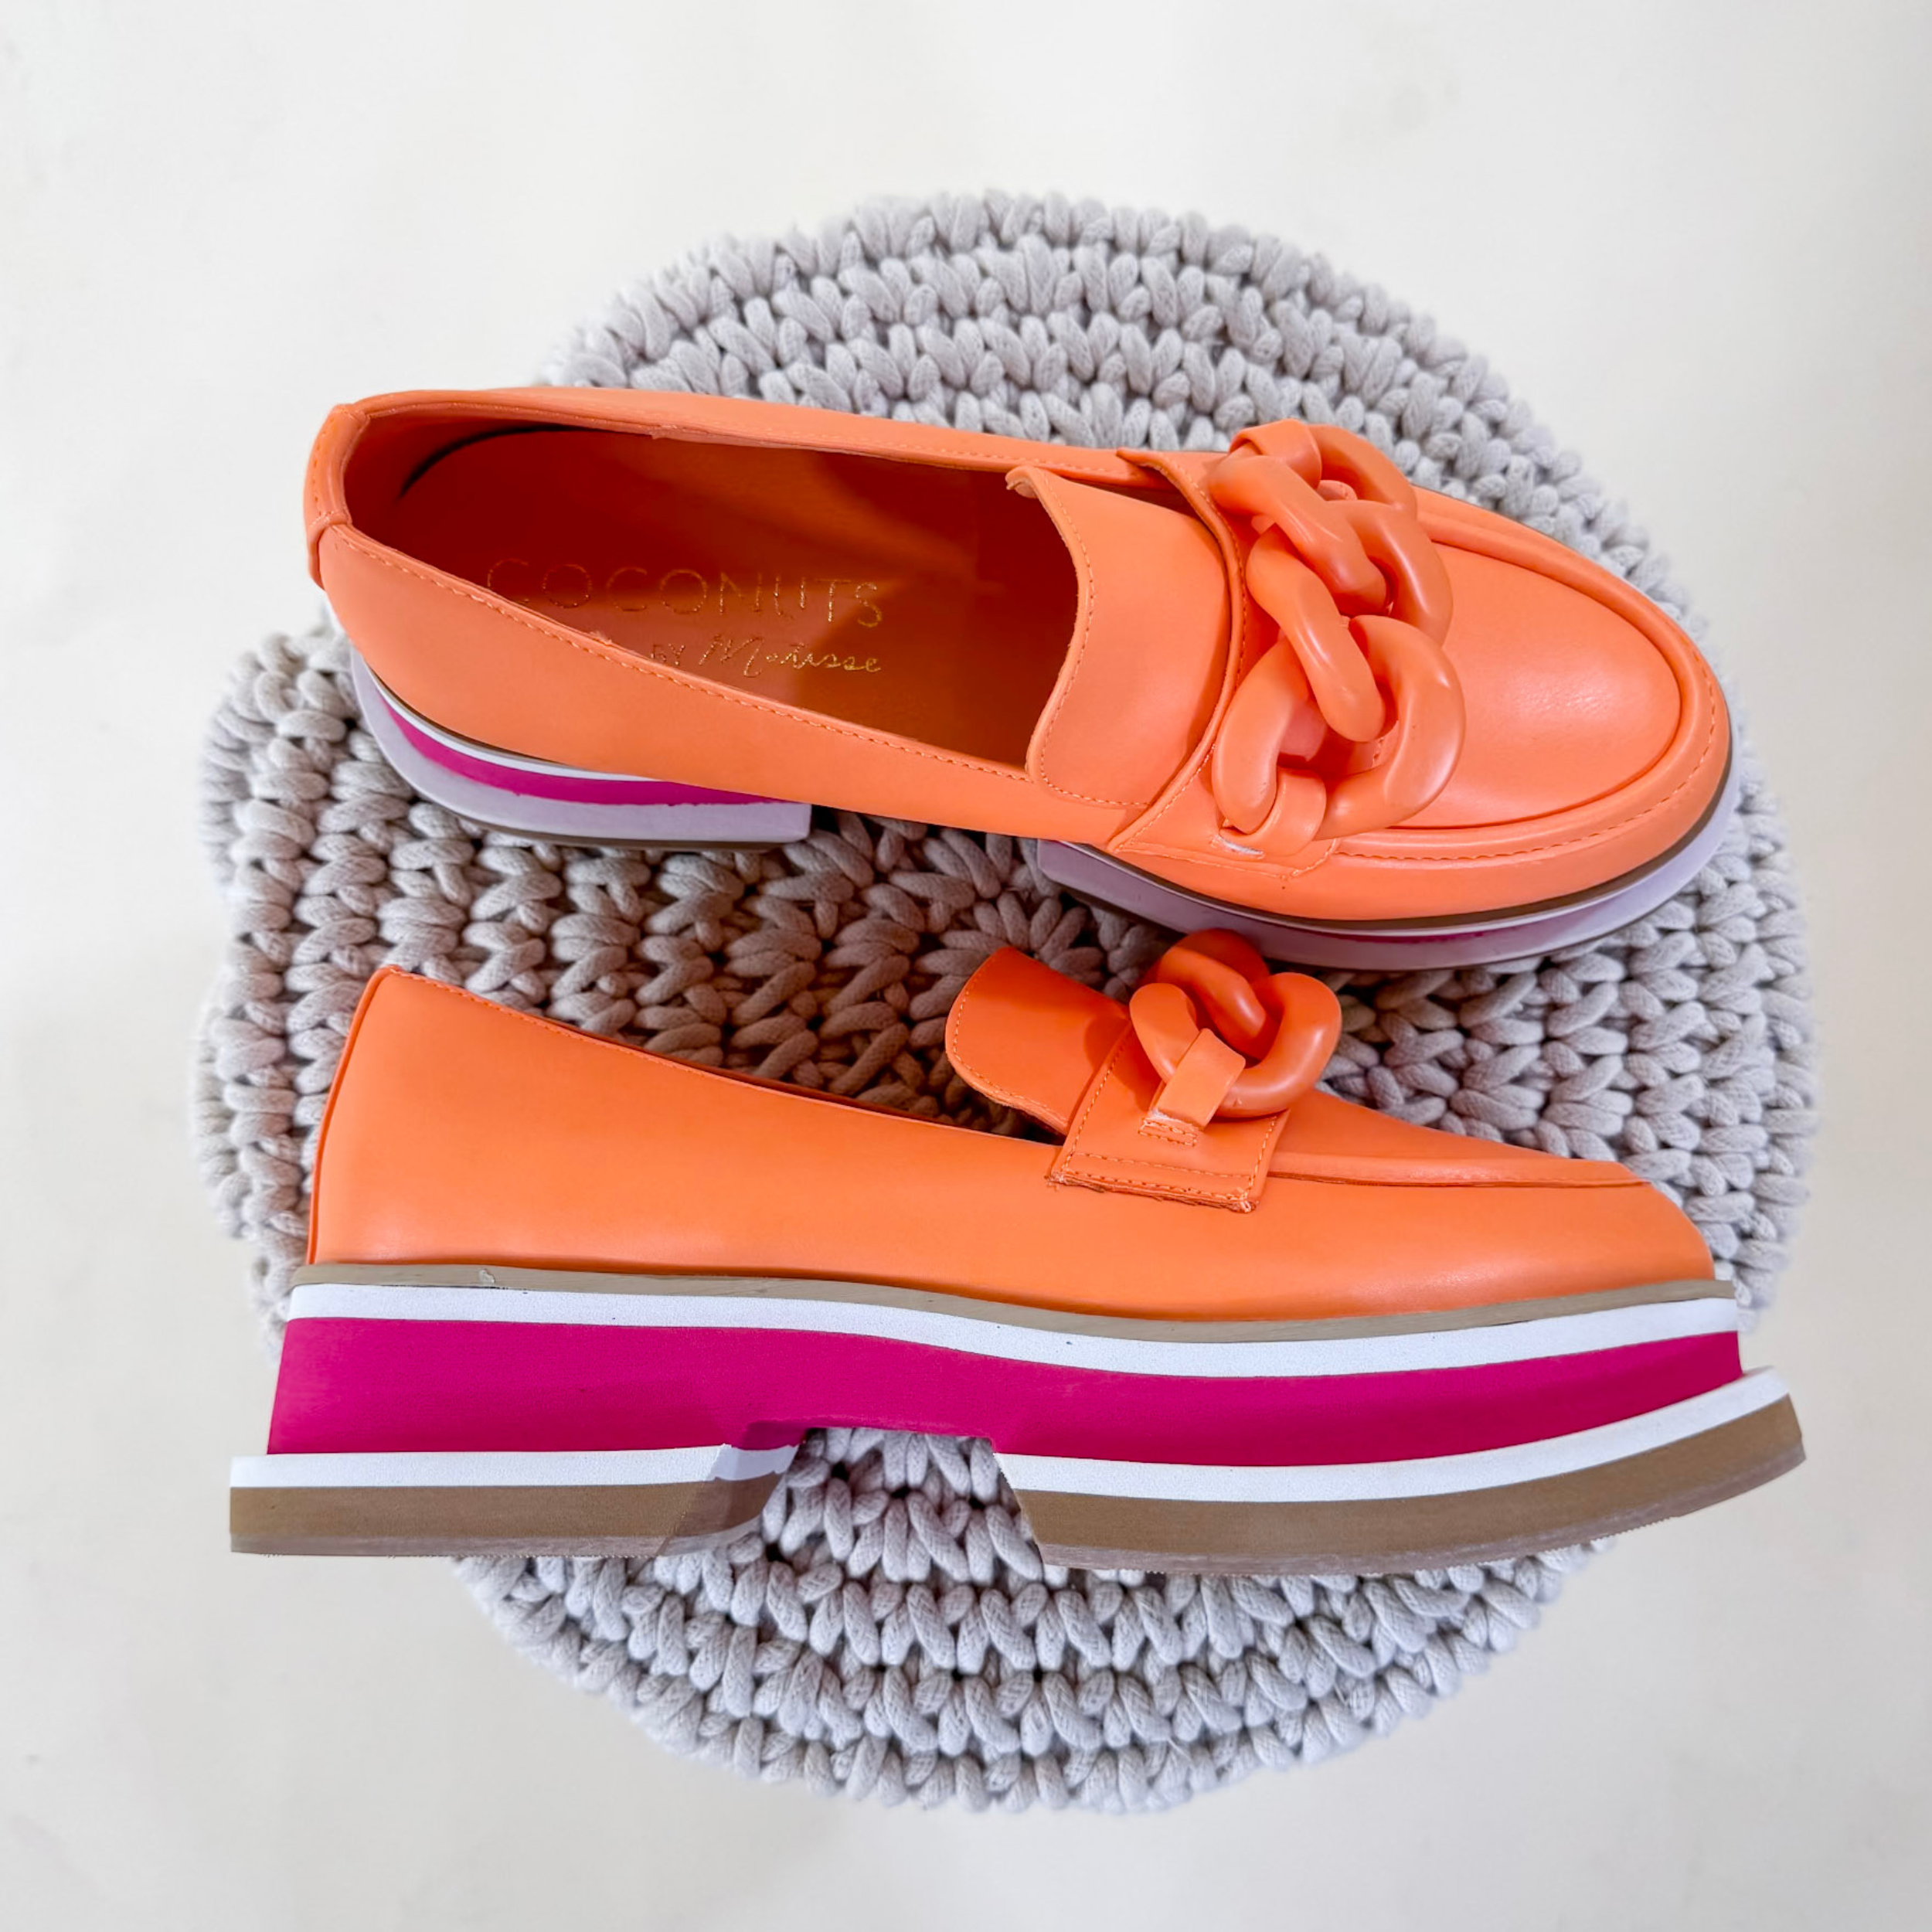 Matisse | Madison Platform Loafer in Orange Sorbet - Giddy Up Glamour Boutique